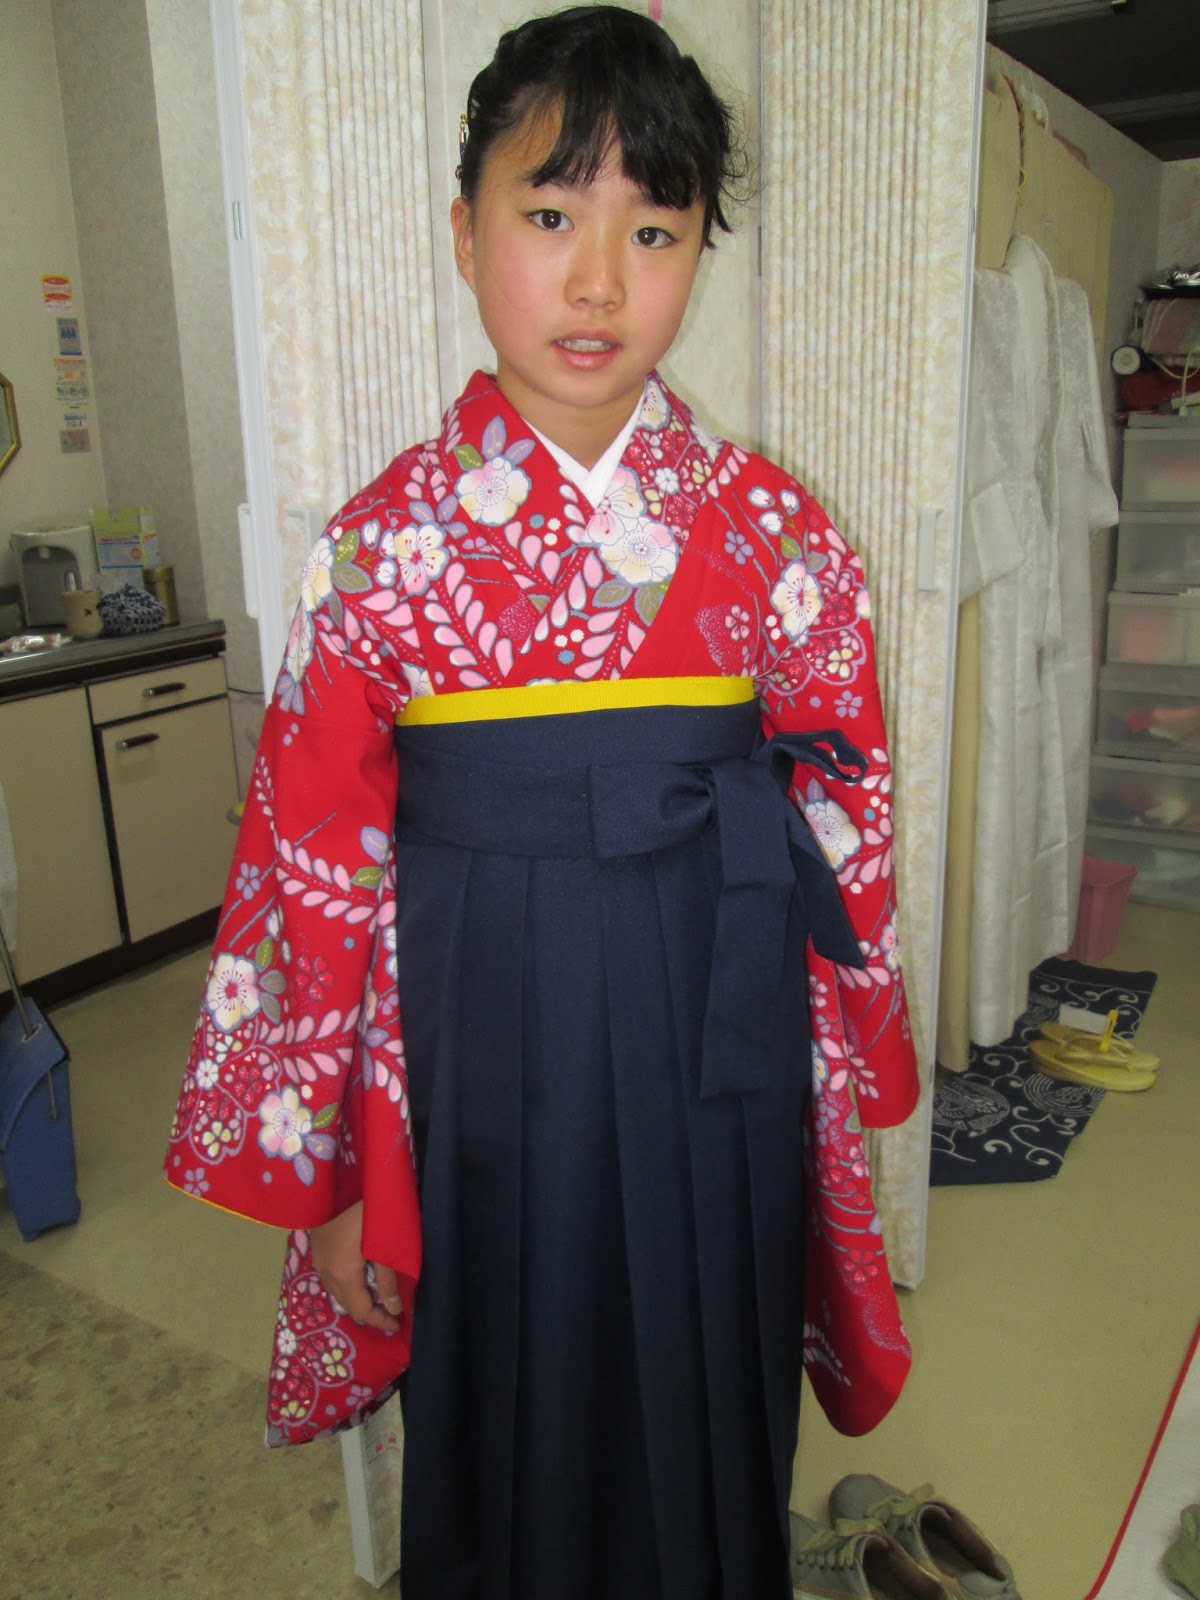 Paphioのつぶやき 小学生の袴姿・可愛いですね、茨木市の美容室パフィオでは早朝も対応いたします